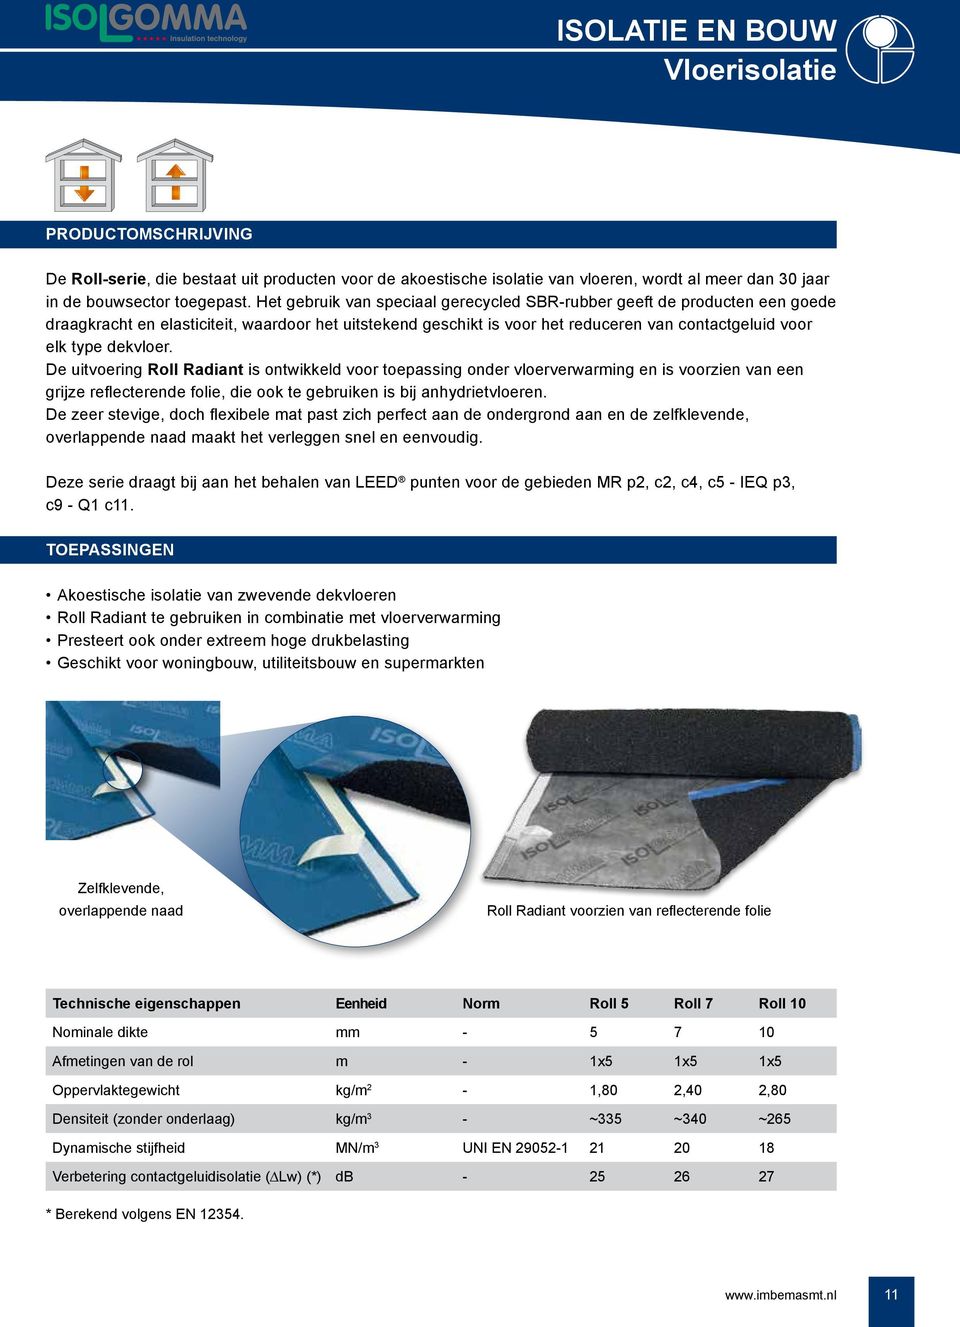 dekvloer. De uitvoering Roll Radiant is ontwikkeld voor toepassing onder vloerverwarming en is voorzien van een grijze reflecterende folie, die ook te gebruiken is bij anhydrietvloeren.